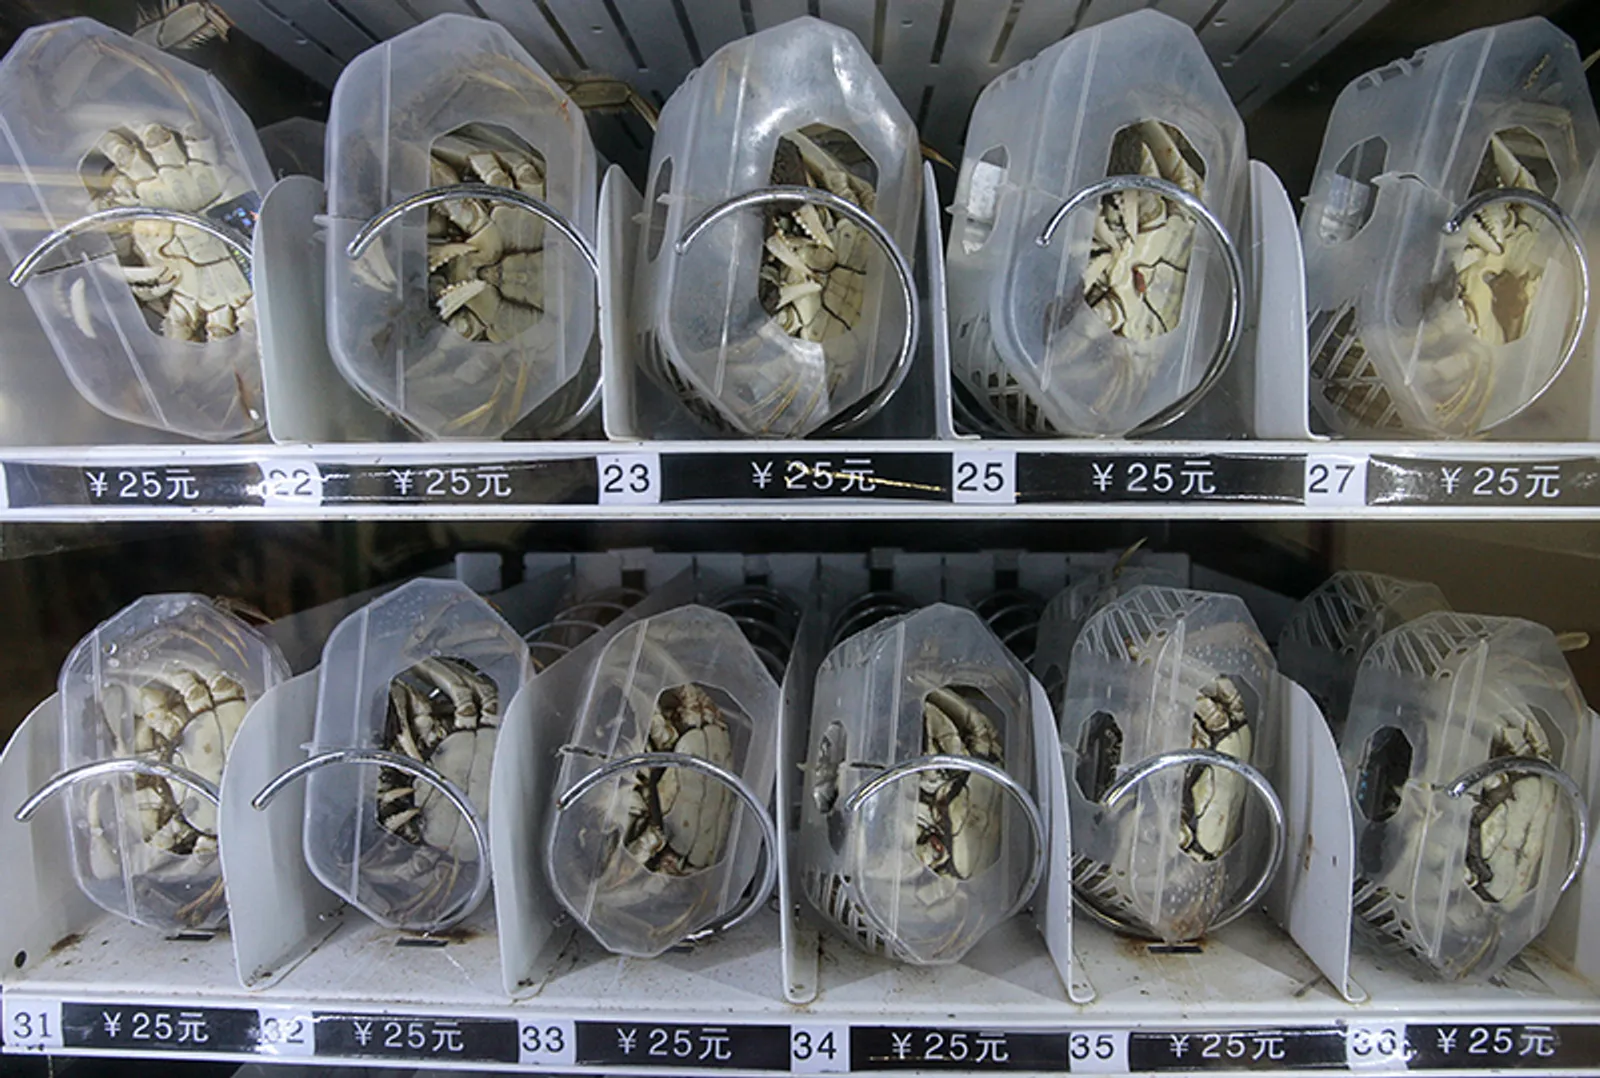 Terlalu Eksentrik, Ini Dia 15+ Vending Machine Paling Aneh di Jepang